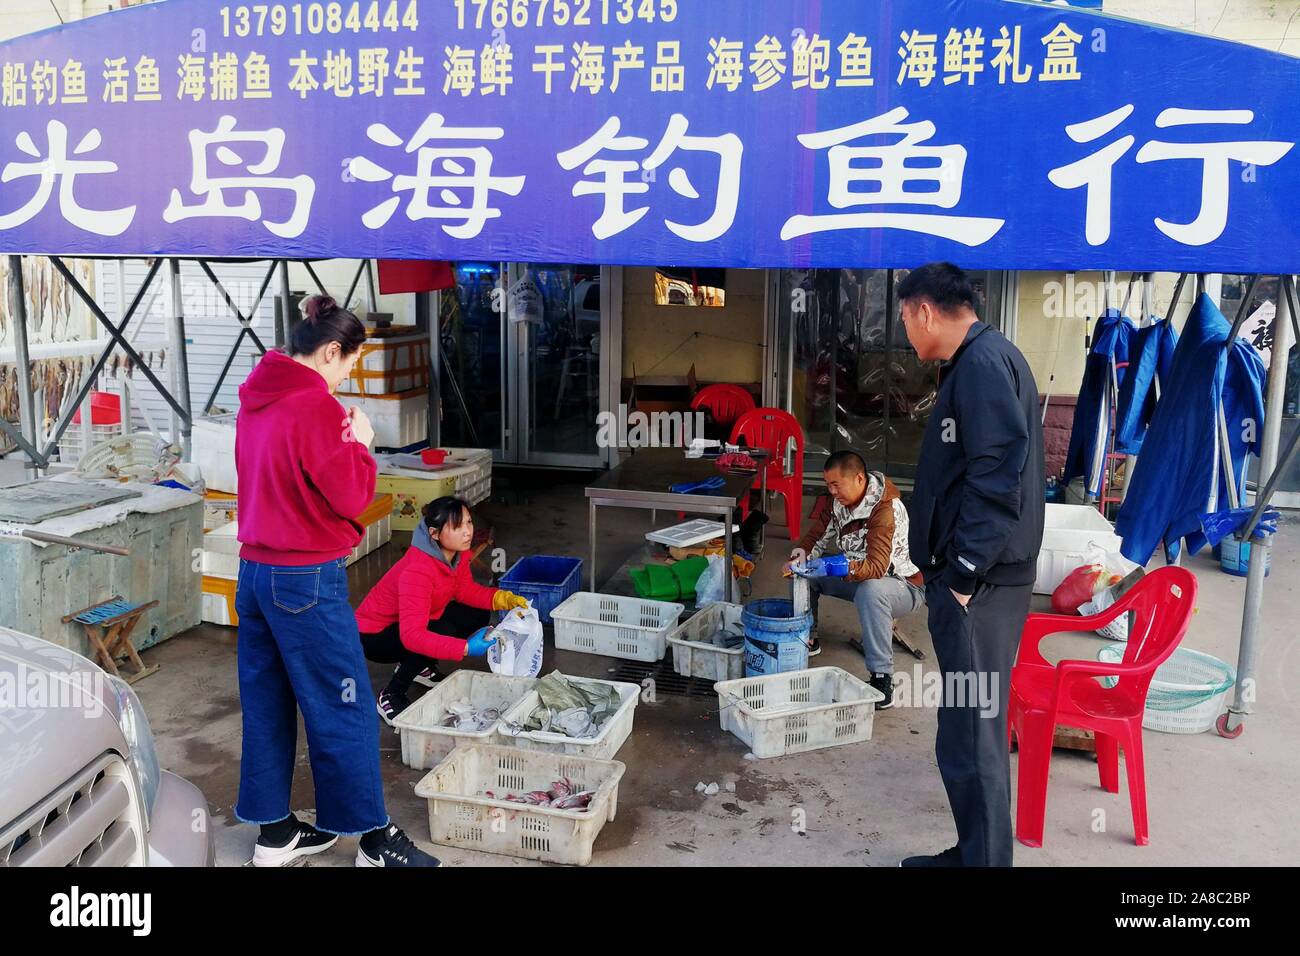 Shandong, Shandong, China. 8 nov, 2019. Shandong, China-pescadores cuelga el pescado seco en el mercado del puerto pesquero Jimiya en Qingdao, Provincia de Shandong, en el este de China, el 7 de noviembre, 2018.secar el pescado a finales de otoño y principios de invierno es una tradición de pescadores en la península de Jiaodong.Pescadores seleccione primero el pescado fresco del mar, corte la espalda y espolvorear las capas de sal gruesa, luego agregar la sal durante un corto periodo de tiempo, alrededor de una hora y, a continuación, enjuague con agua limpia.Por último, la difusión en la red de pesca o colgarlos para que se sequen. Cuando son 70% secas pueden ser comidos. Crédito: SIPA Asia/Zuma alambre/Alamy Live News Foto de stock